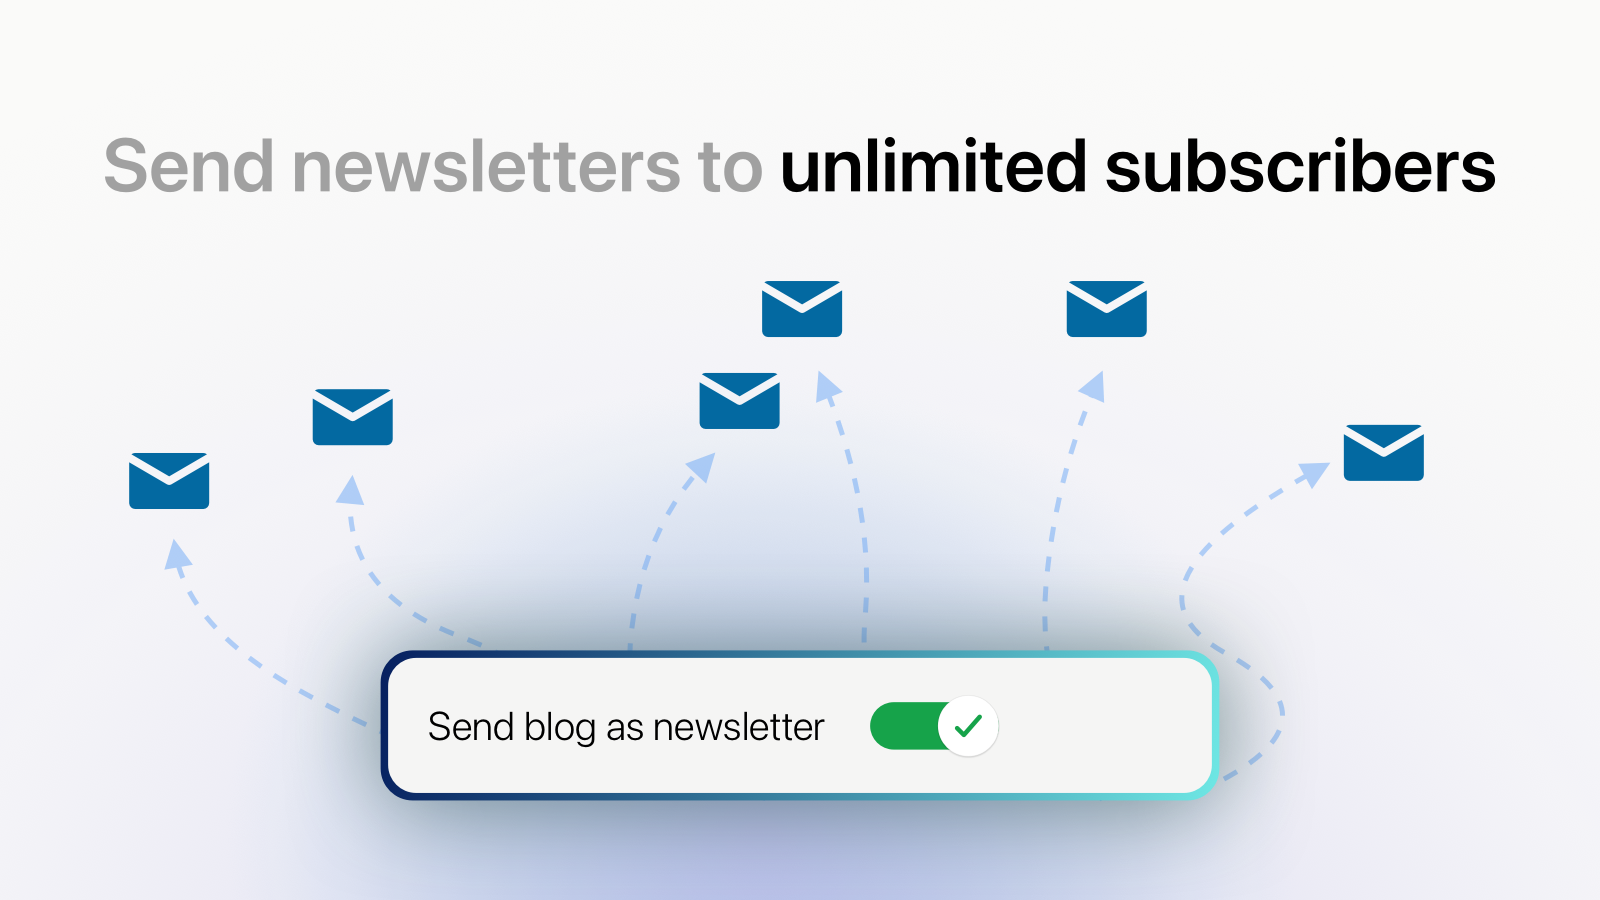 Växla för att skicka artiklar som e-postnyhetsbrev